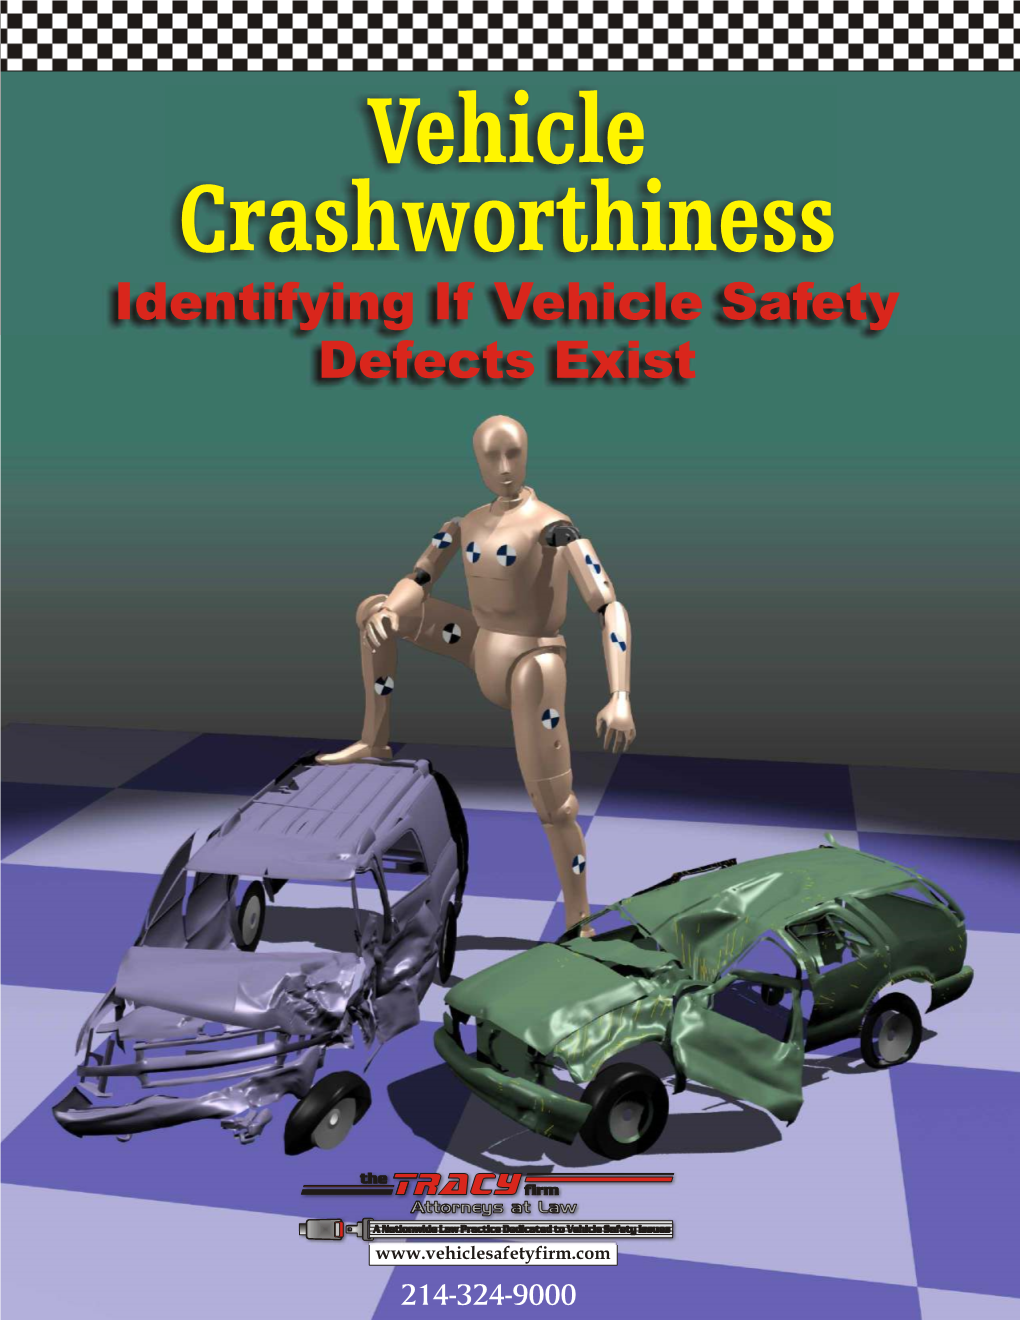 Vehicle Crashworthiness Identifying If Vehicle Safety Defects Exist